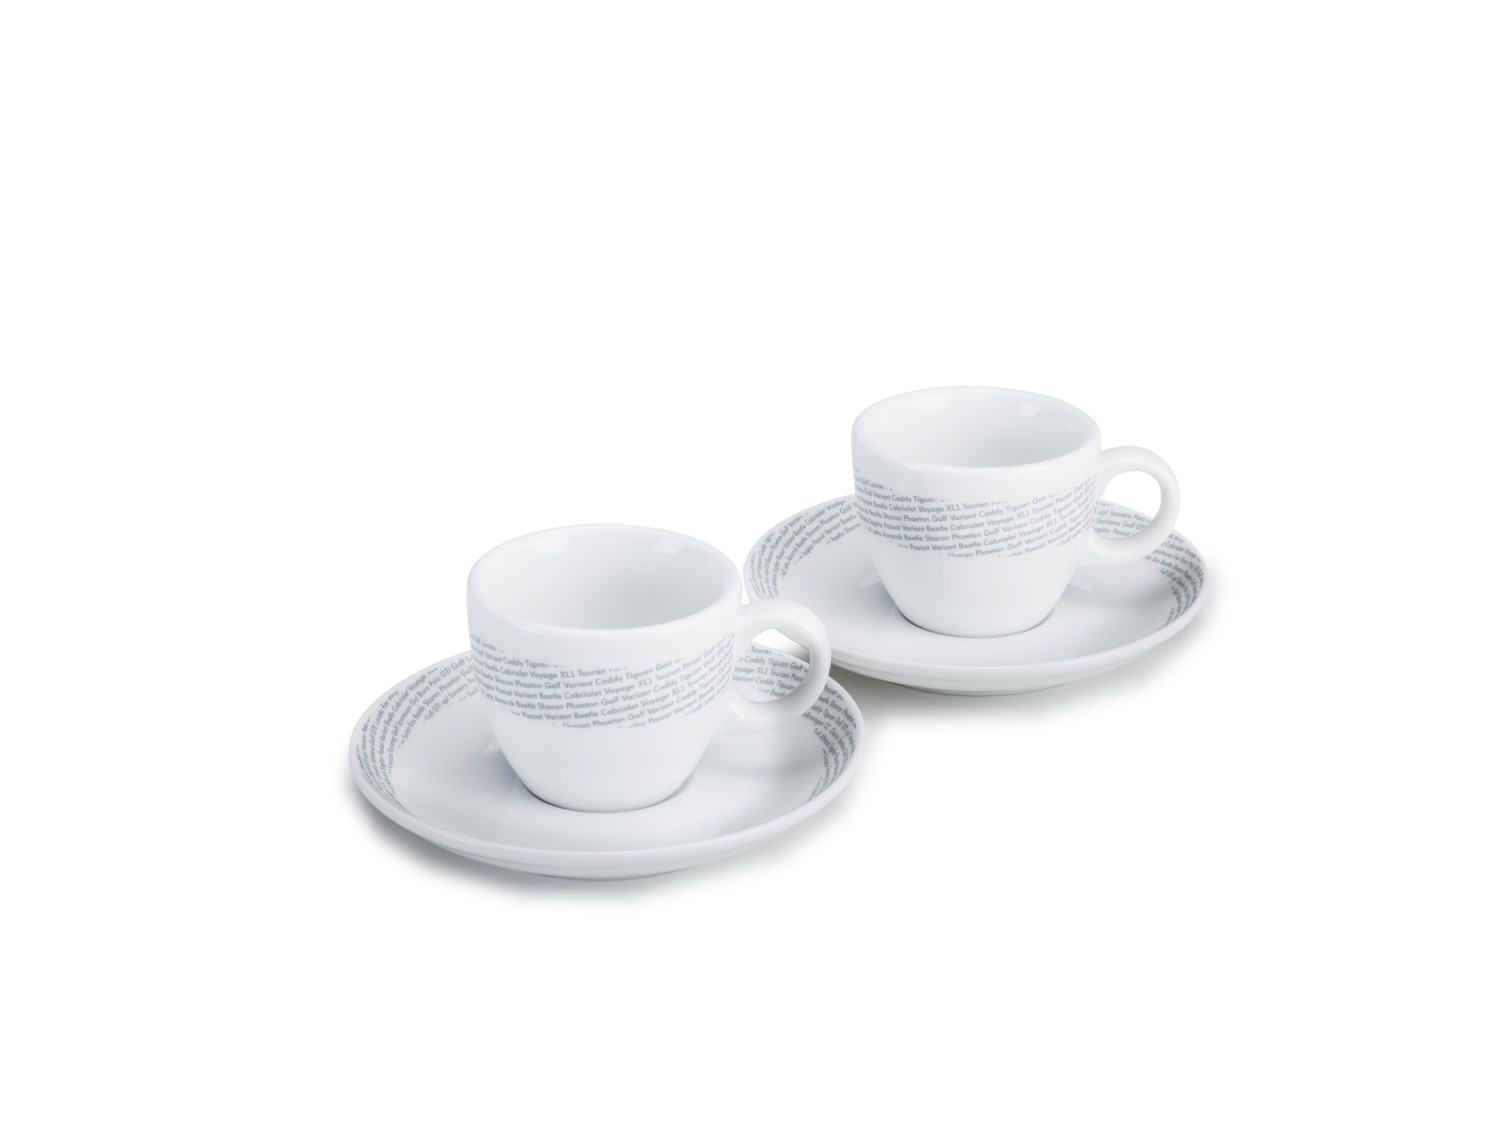  Juego de tazas de café, taza de café, estilo europeo, pequeño  lujo con cuchara, taza de cerámica simple, taza de té británica, elegante  taza de té de color puro, juego de